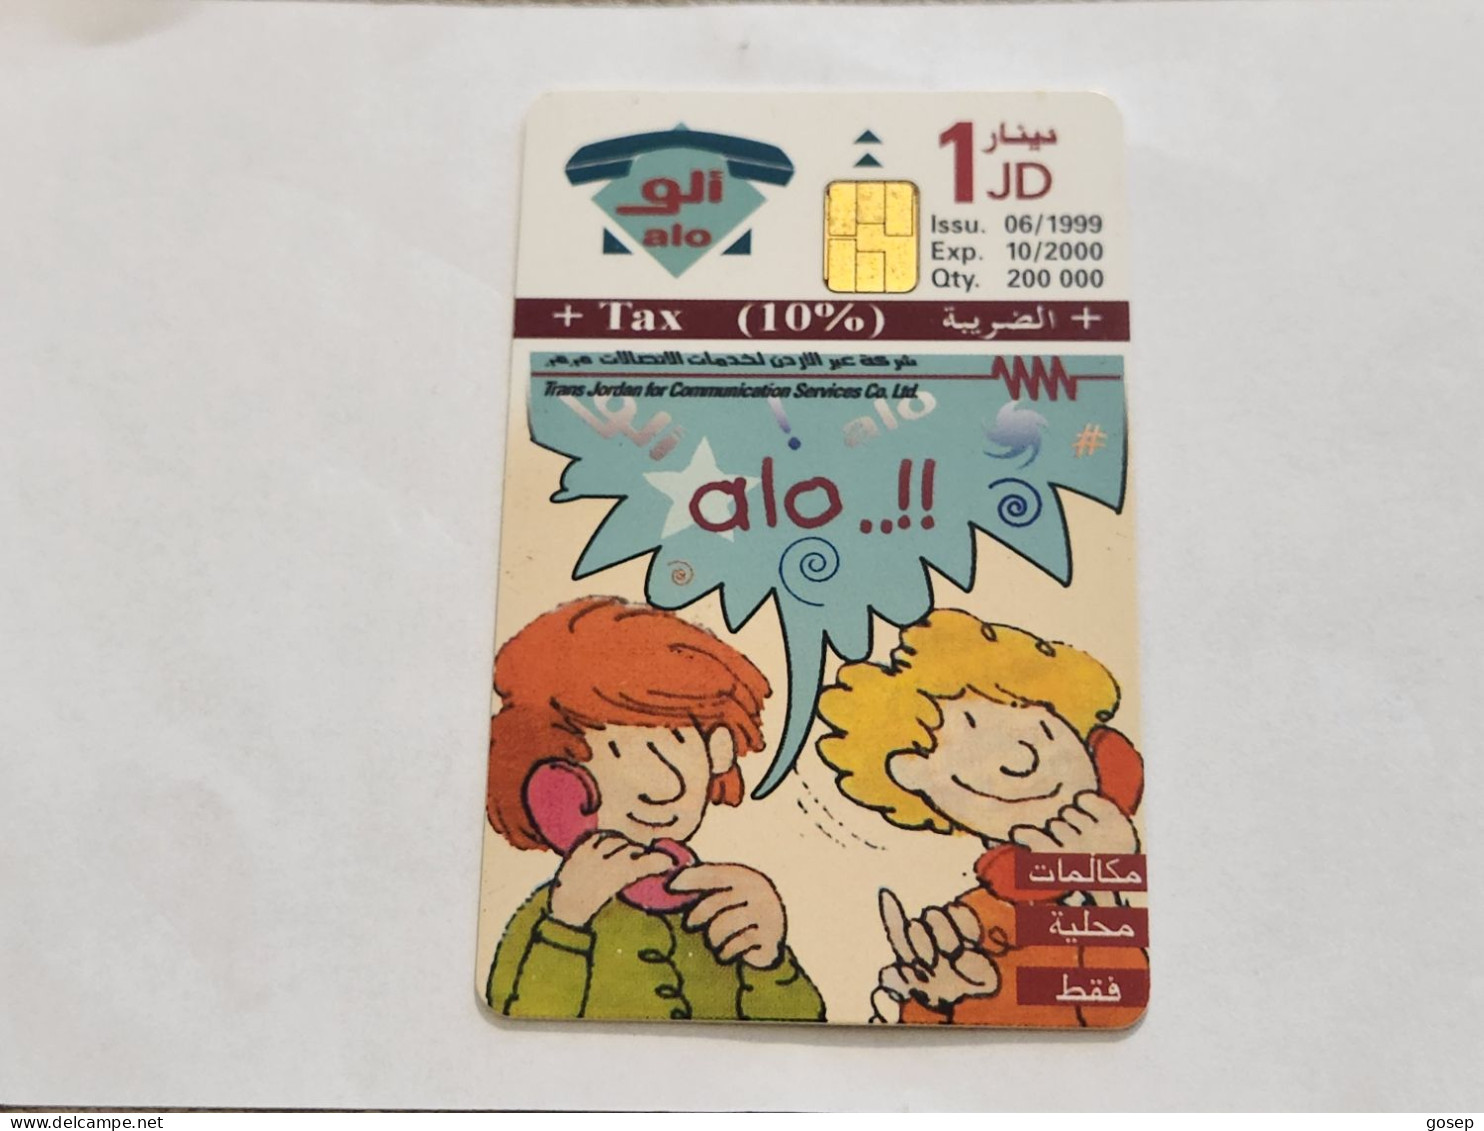 JORDAN-(JO-ALO-0051)-Keep In Touch-(170)-(1002-878884)-(1JD)-(10/2000)-used Card+1card Prepiad Free - Jordanien